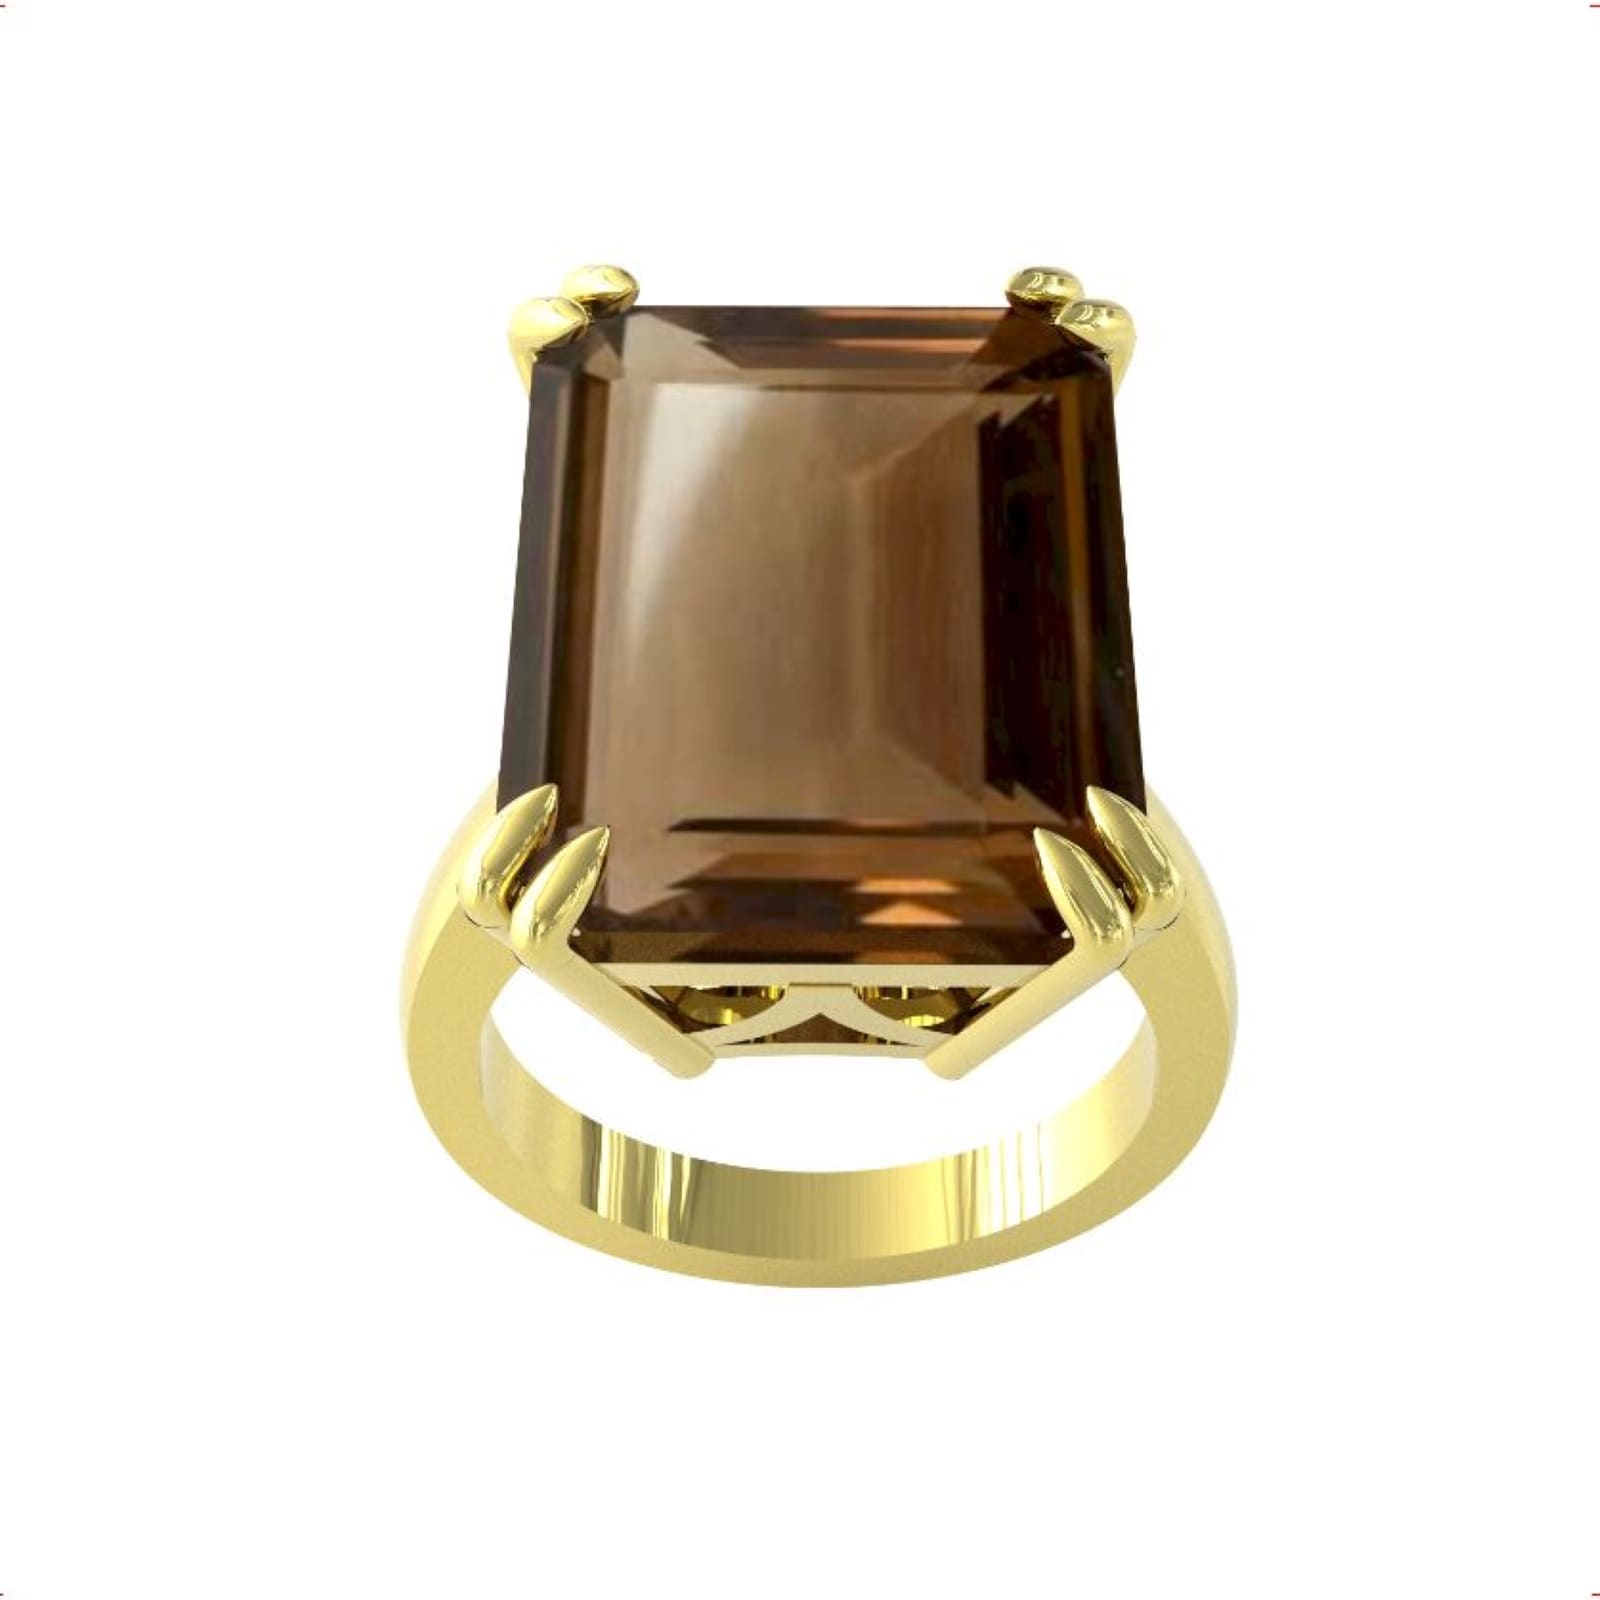 9ct Yellow Gold Emerald Cut Smokey Quartz Ring - Ring Size U